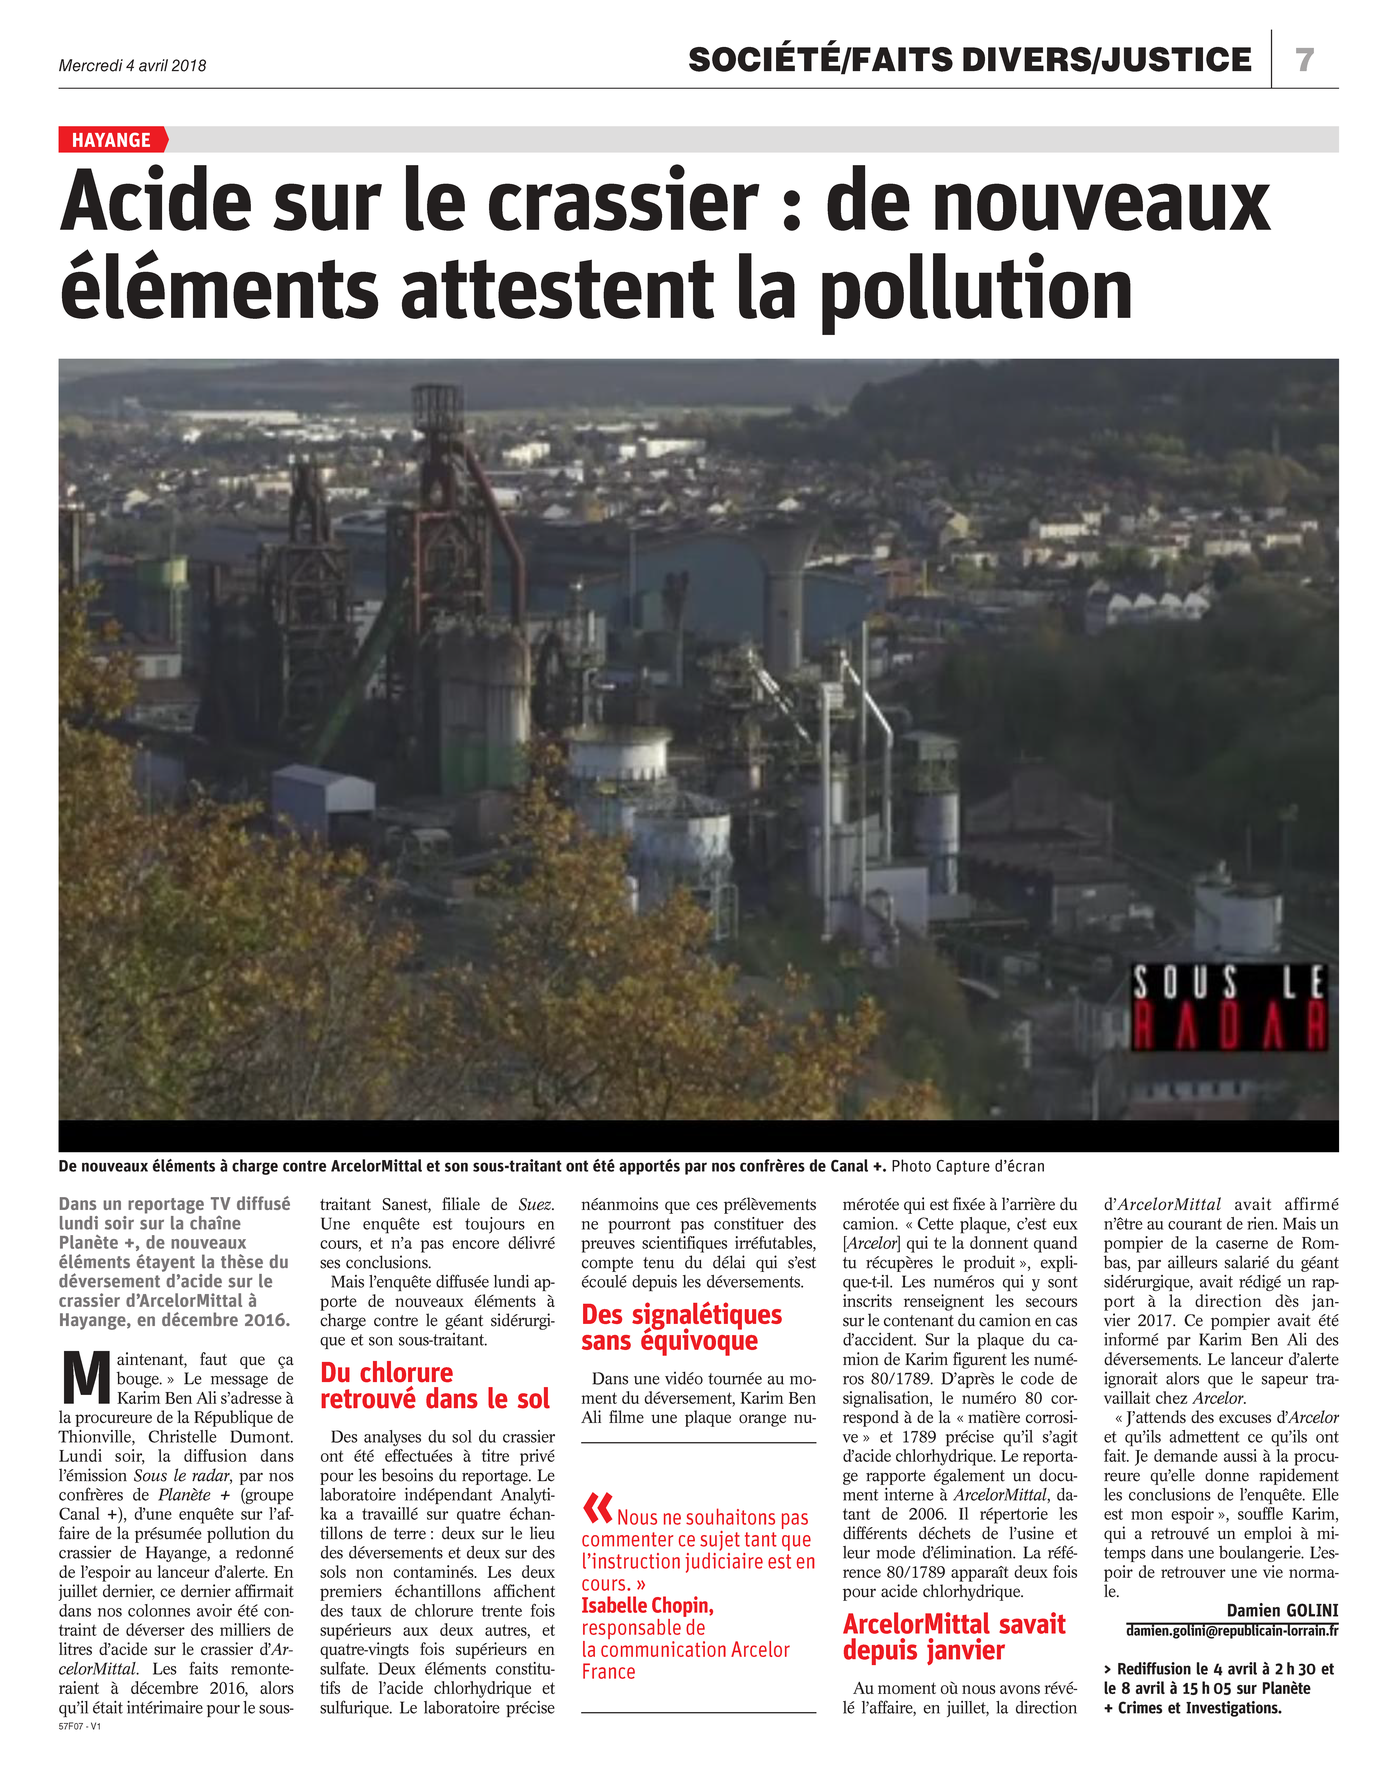 04.04.2018 > LE RÉPUBLICAIN LORRAIN : "Acide sur le crassier d'Hayange : de nouveaux éléments attestent la pollution"